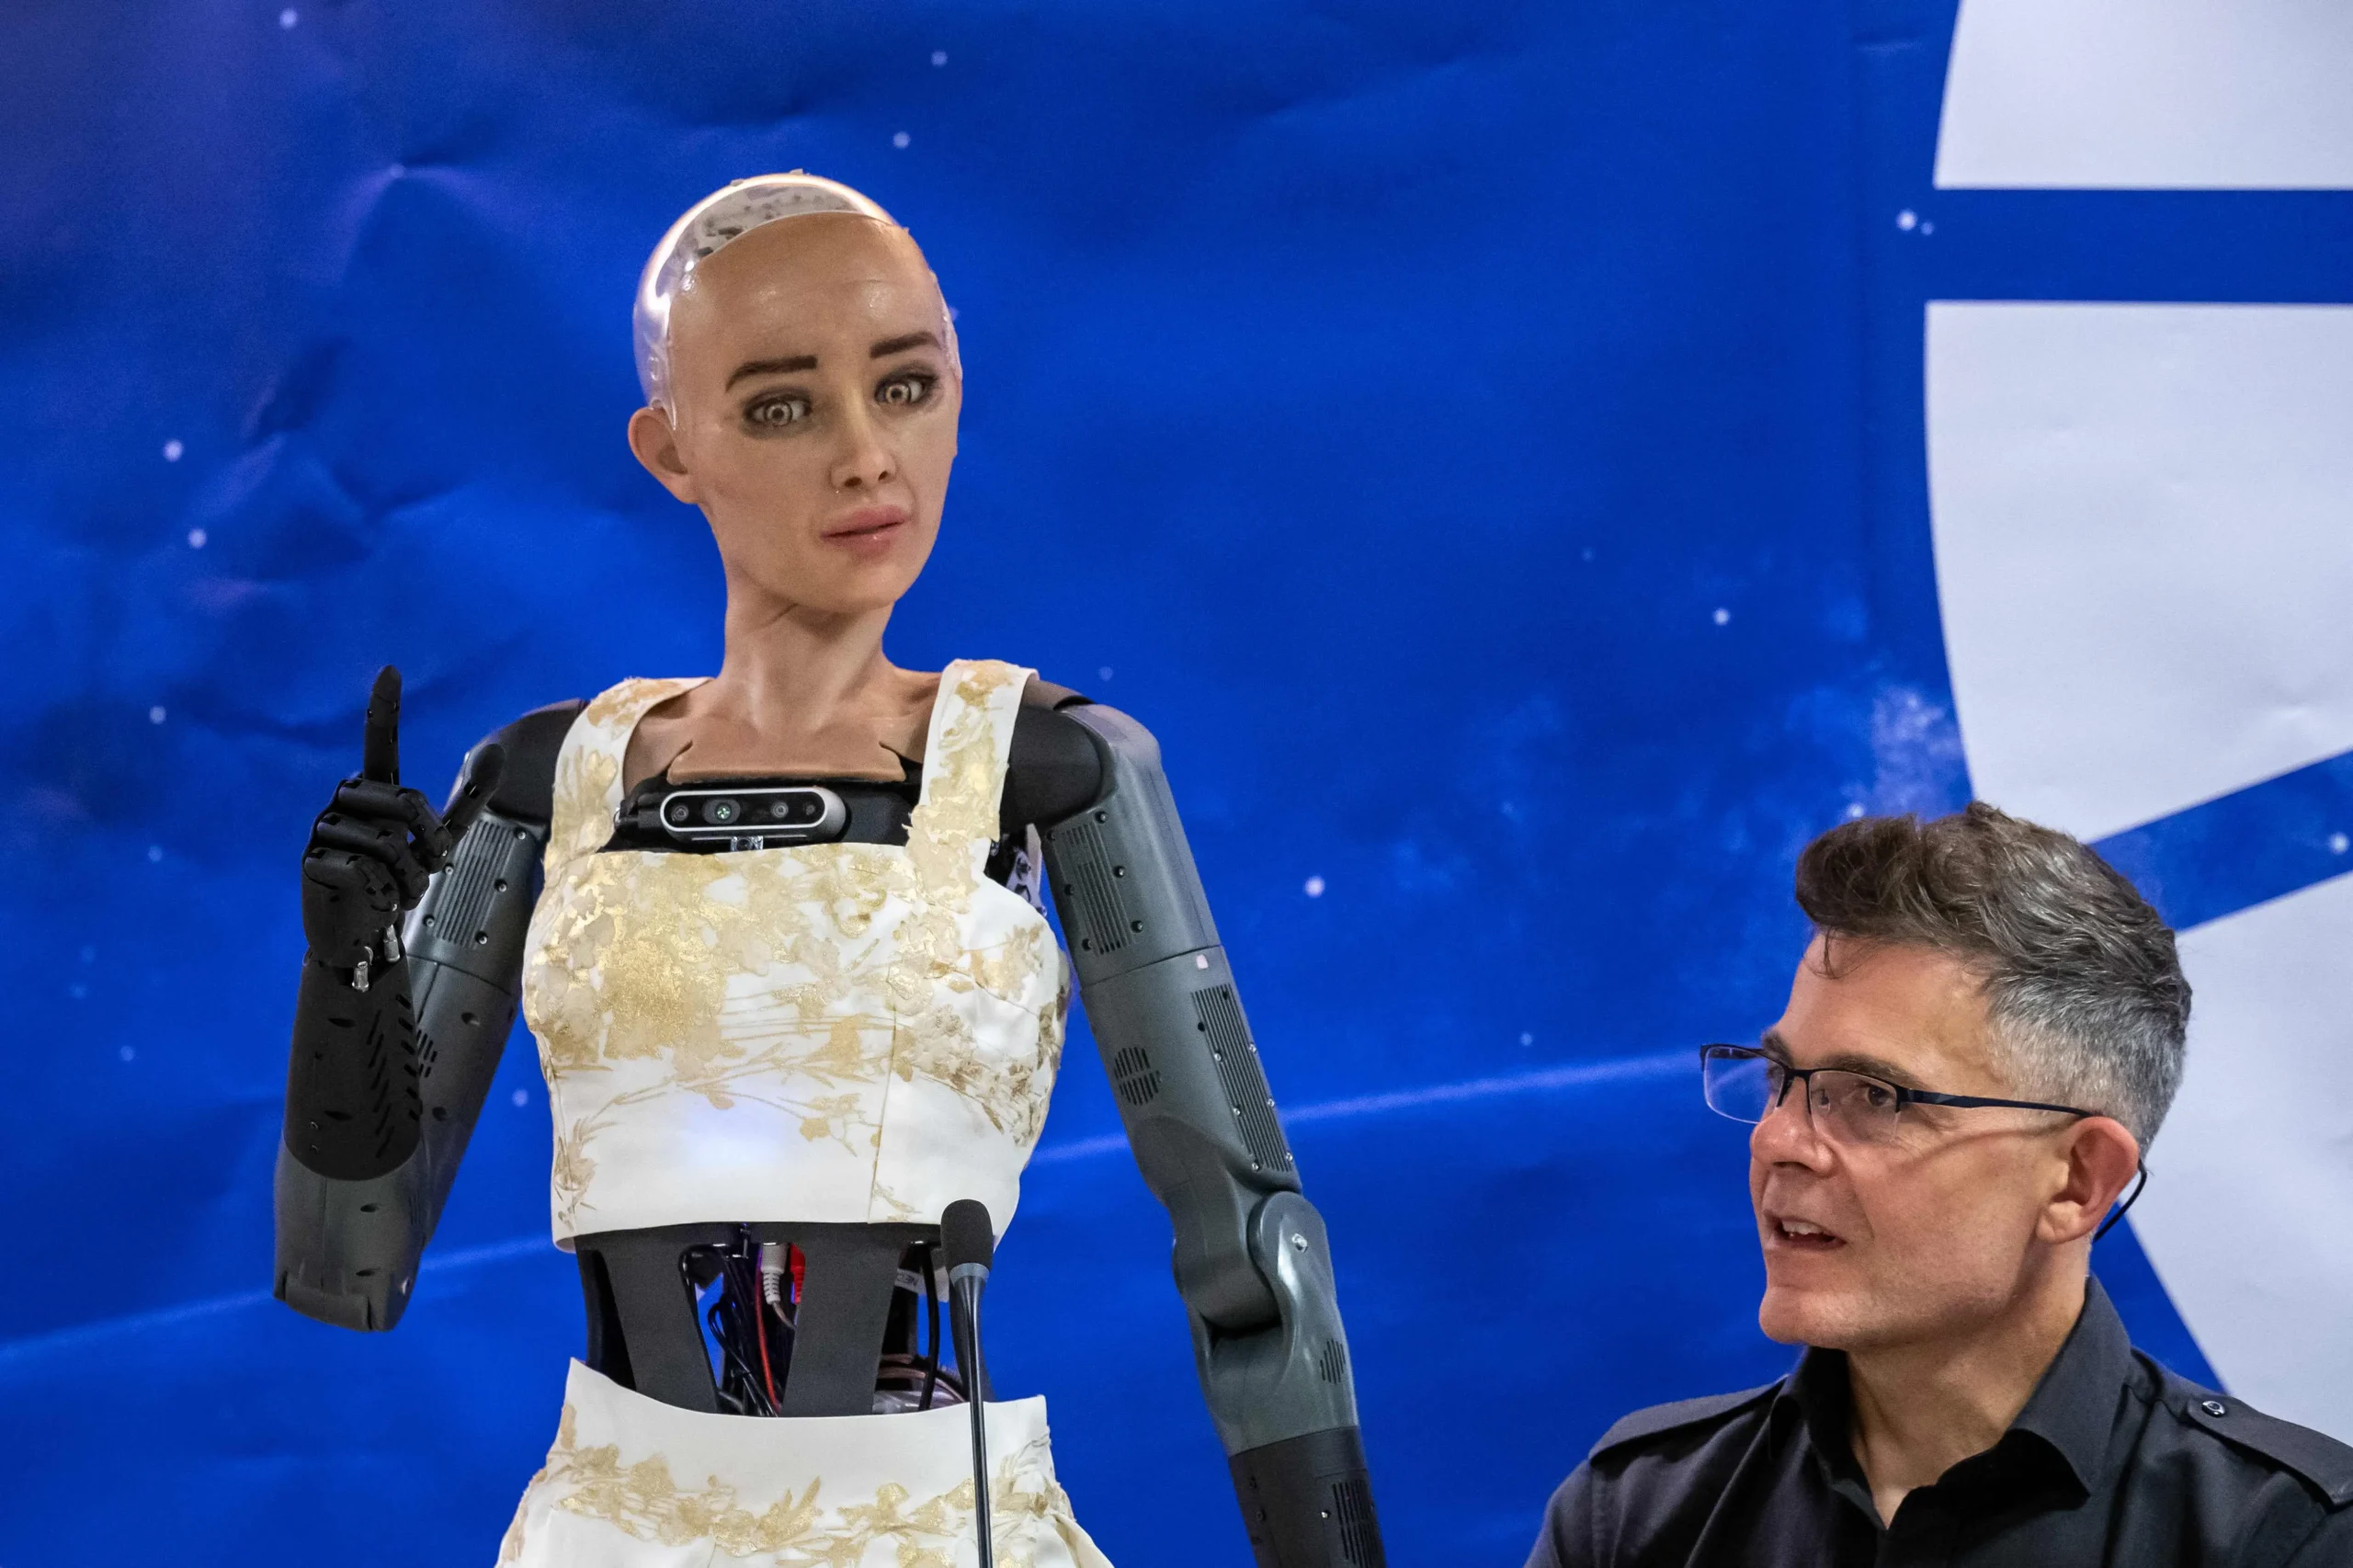 sofia la robot con inteligencia artificial - Qué programa usa el robot Sophia